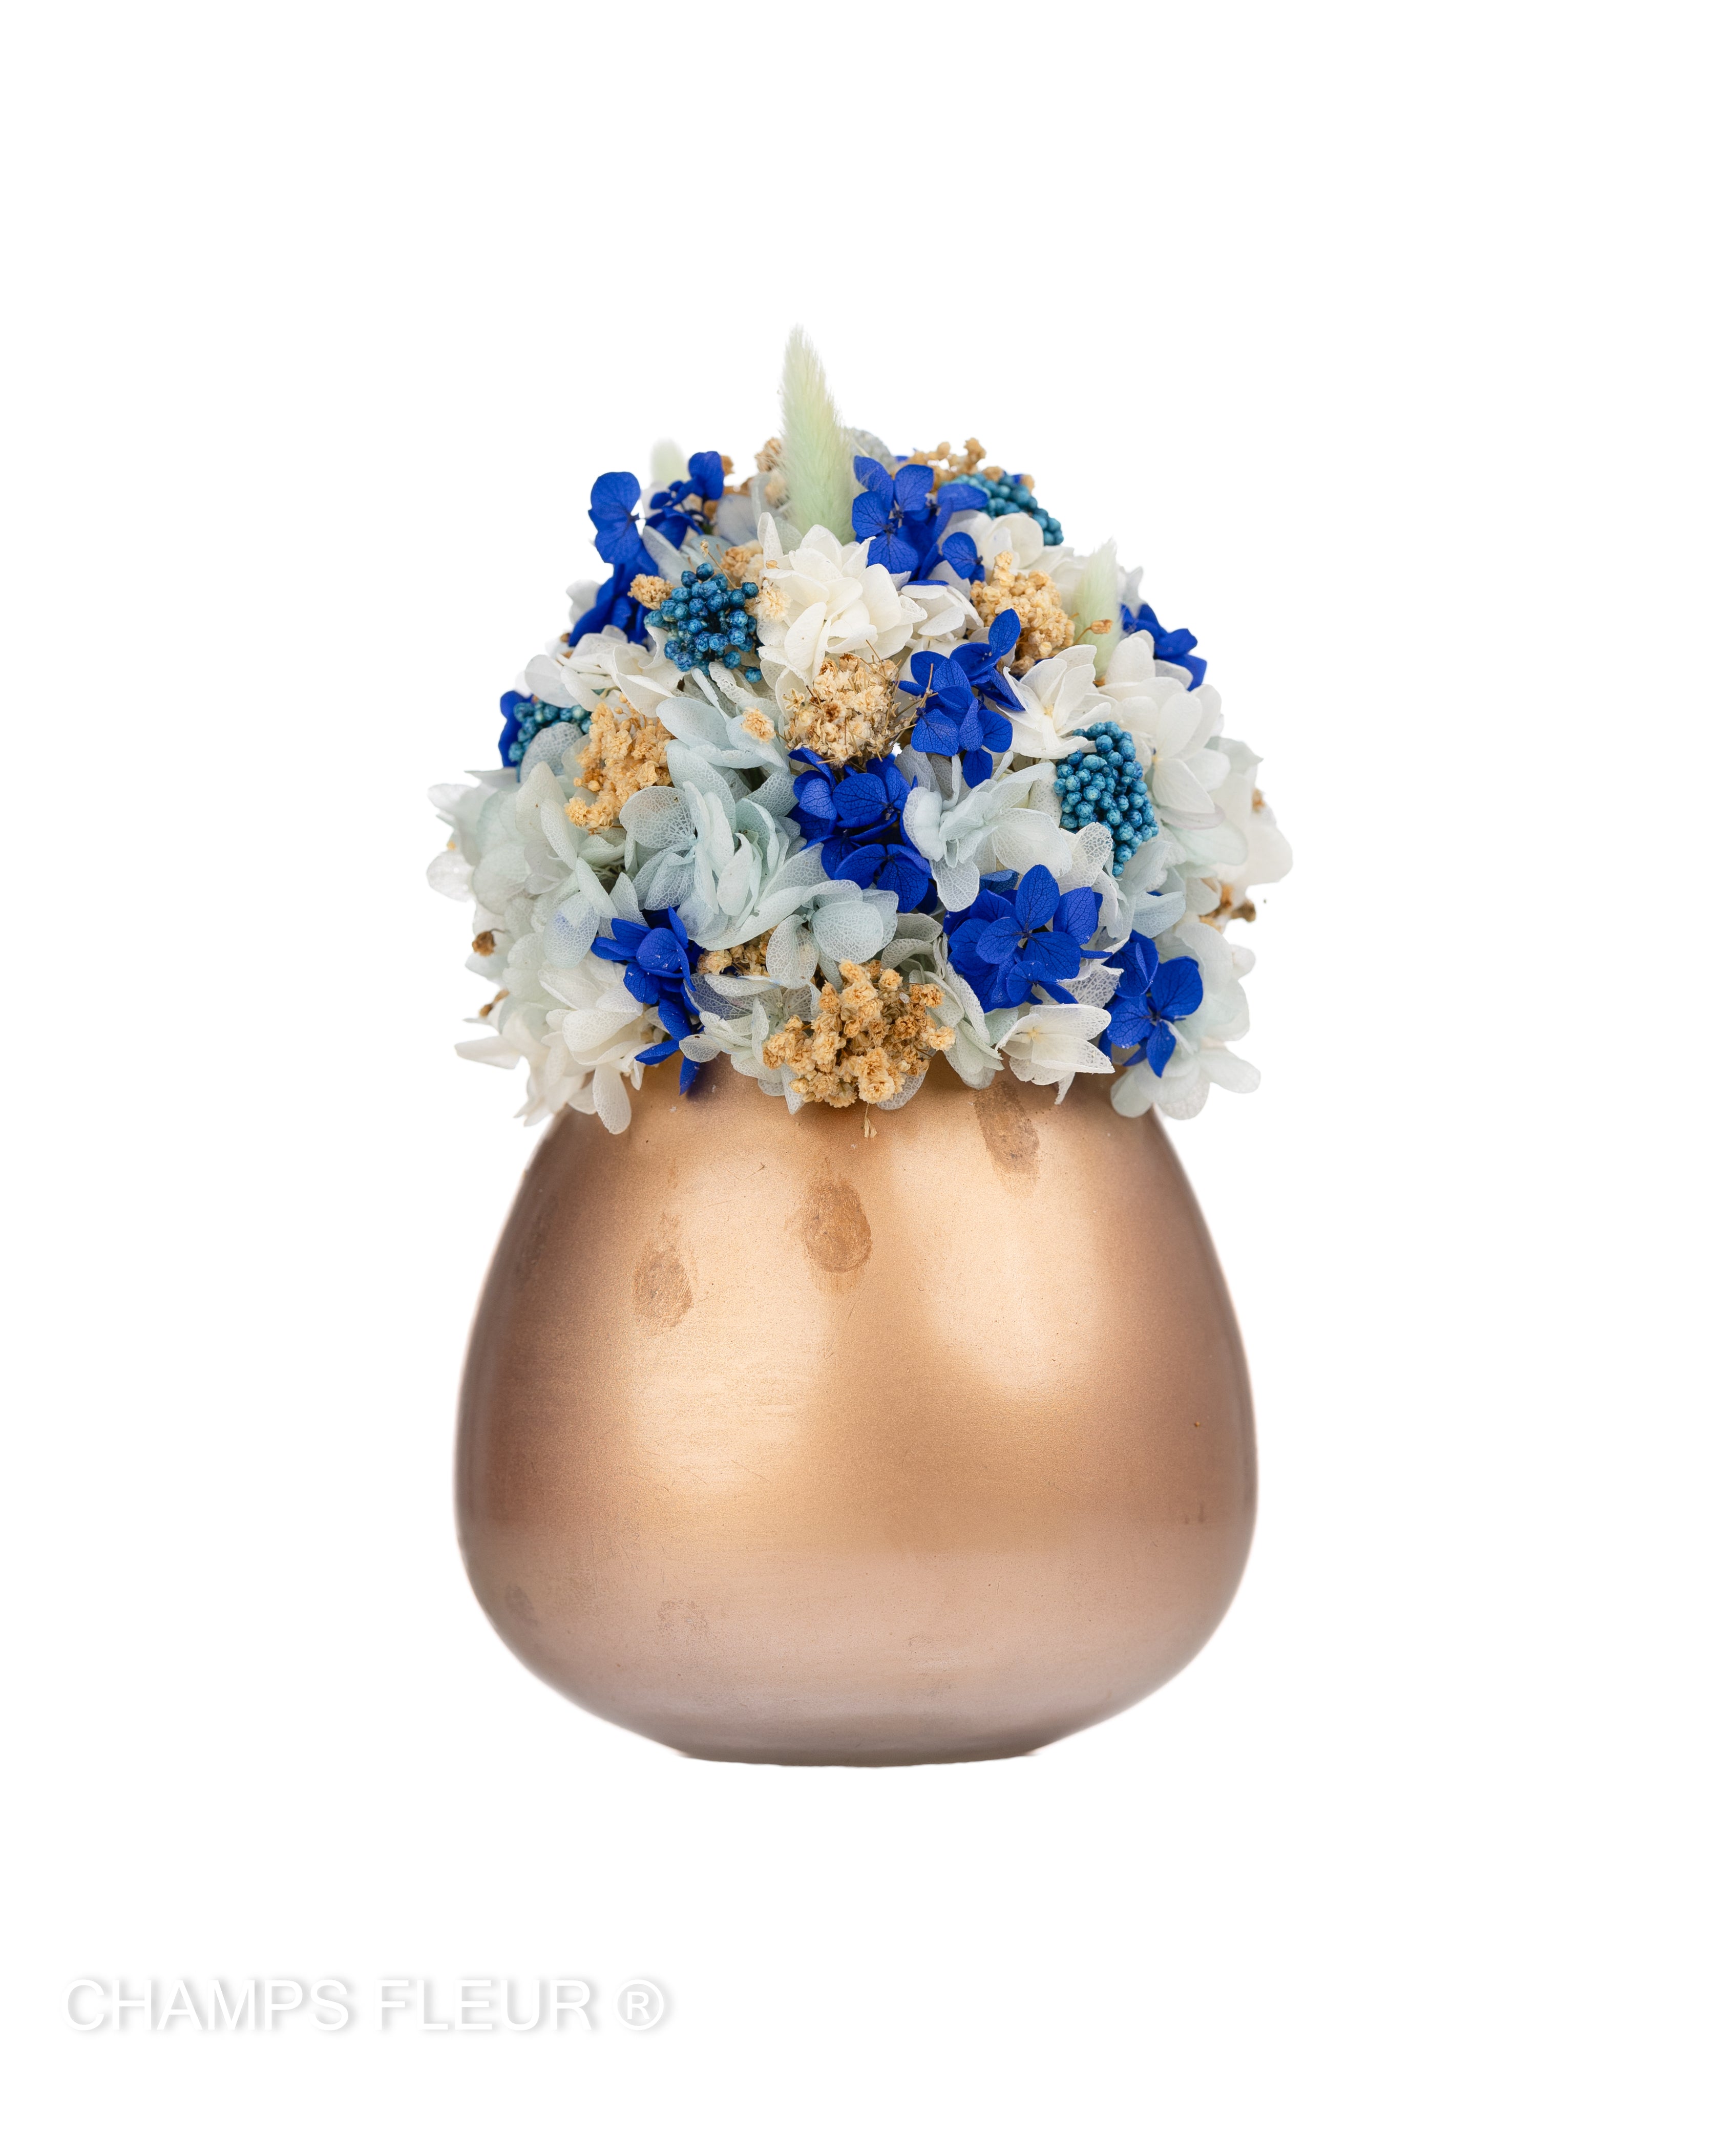 Grande - Blue Flowers in Rose Gold Vase